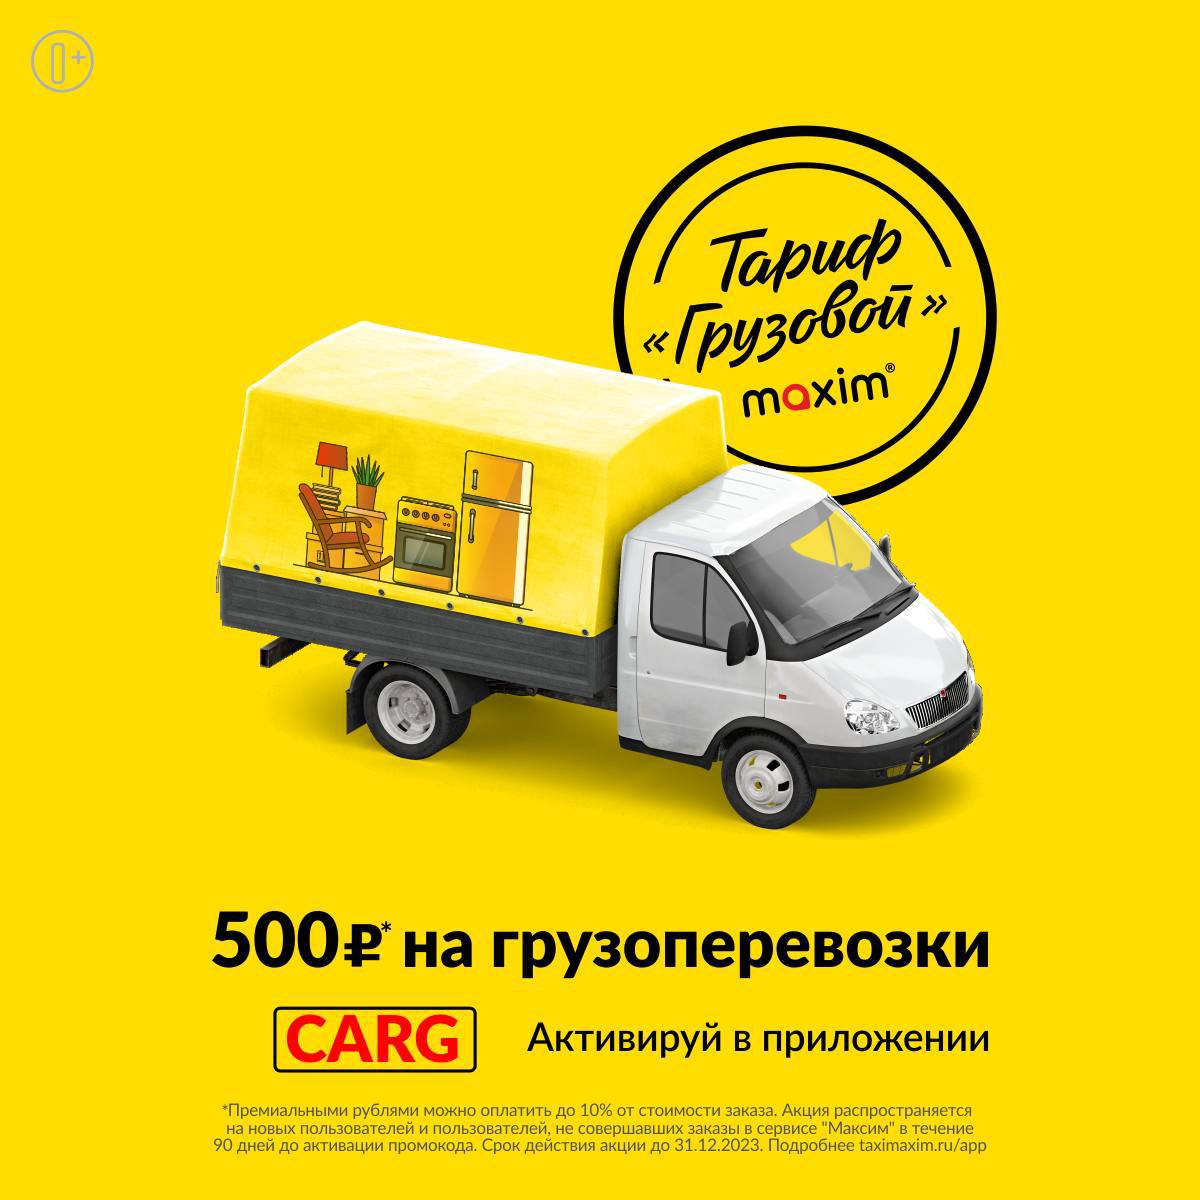 Телефон такси иваново для заказа. Заказать грузовое такси. Грузовое такси Иваново. Как заказать грузовое такси.